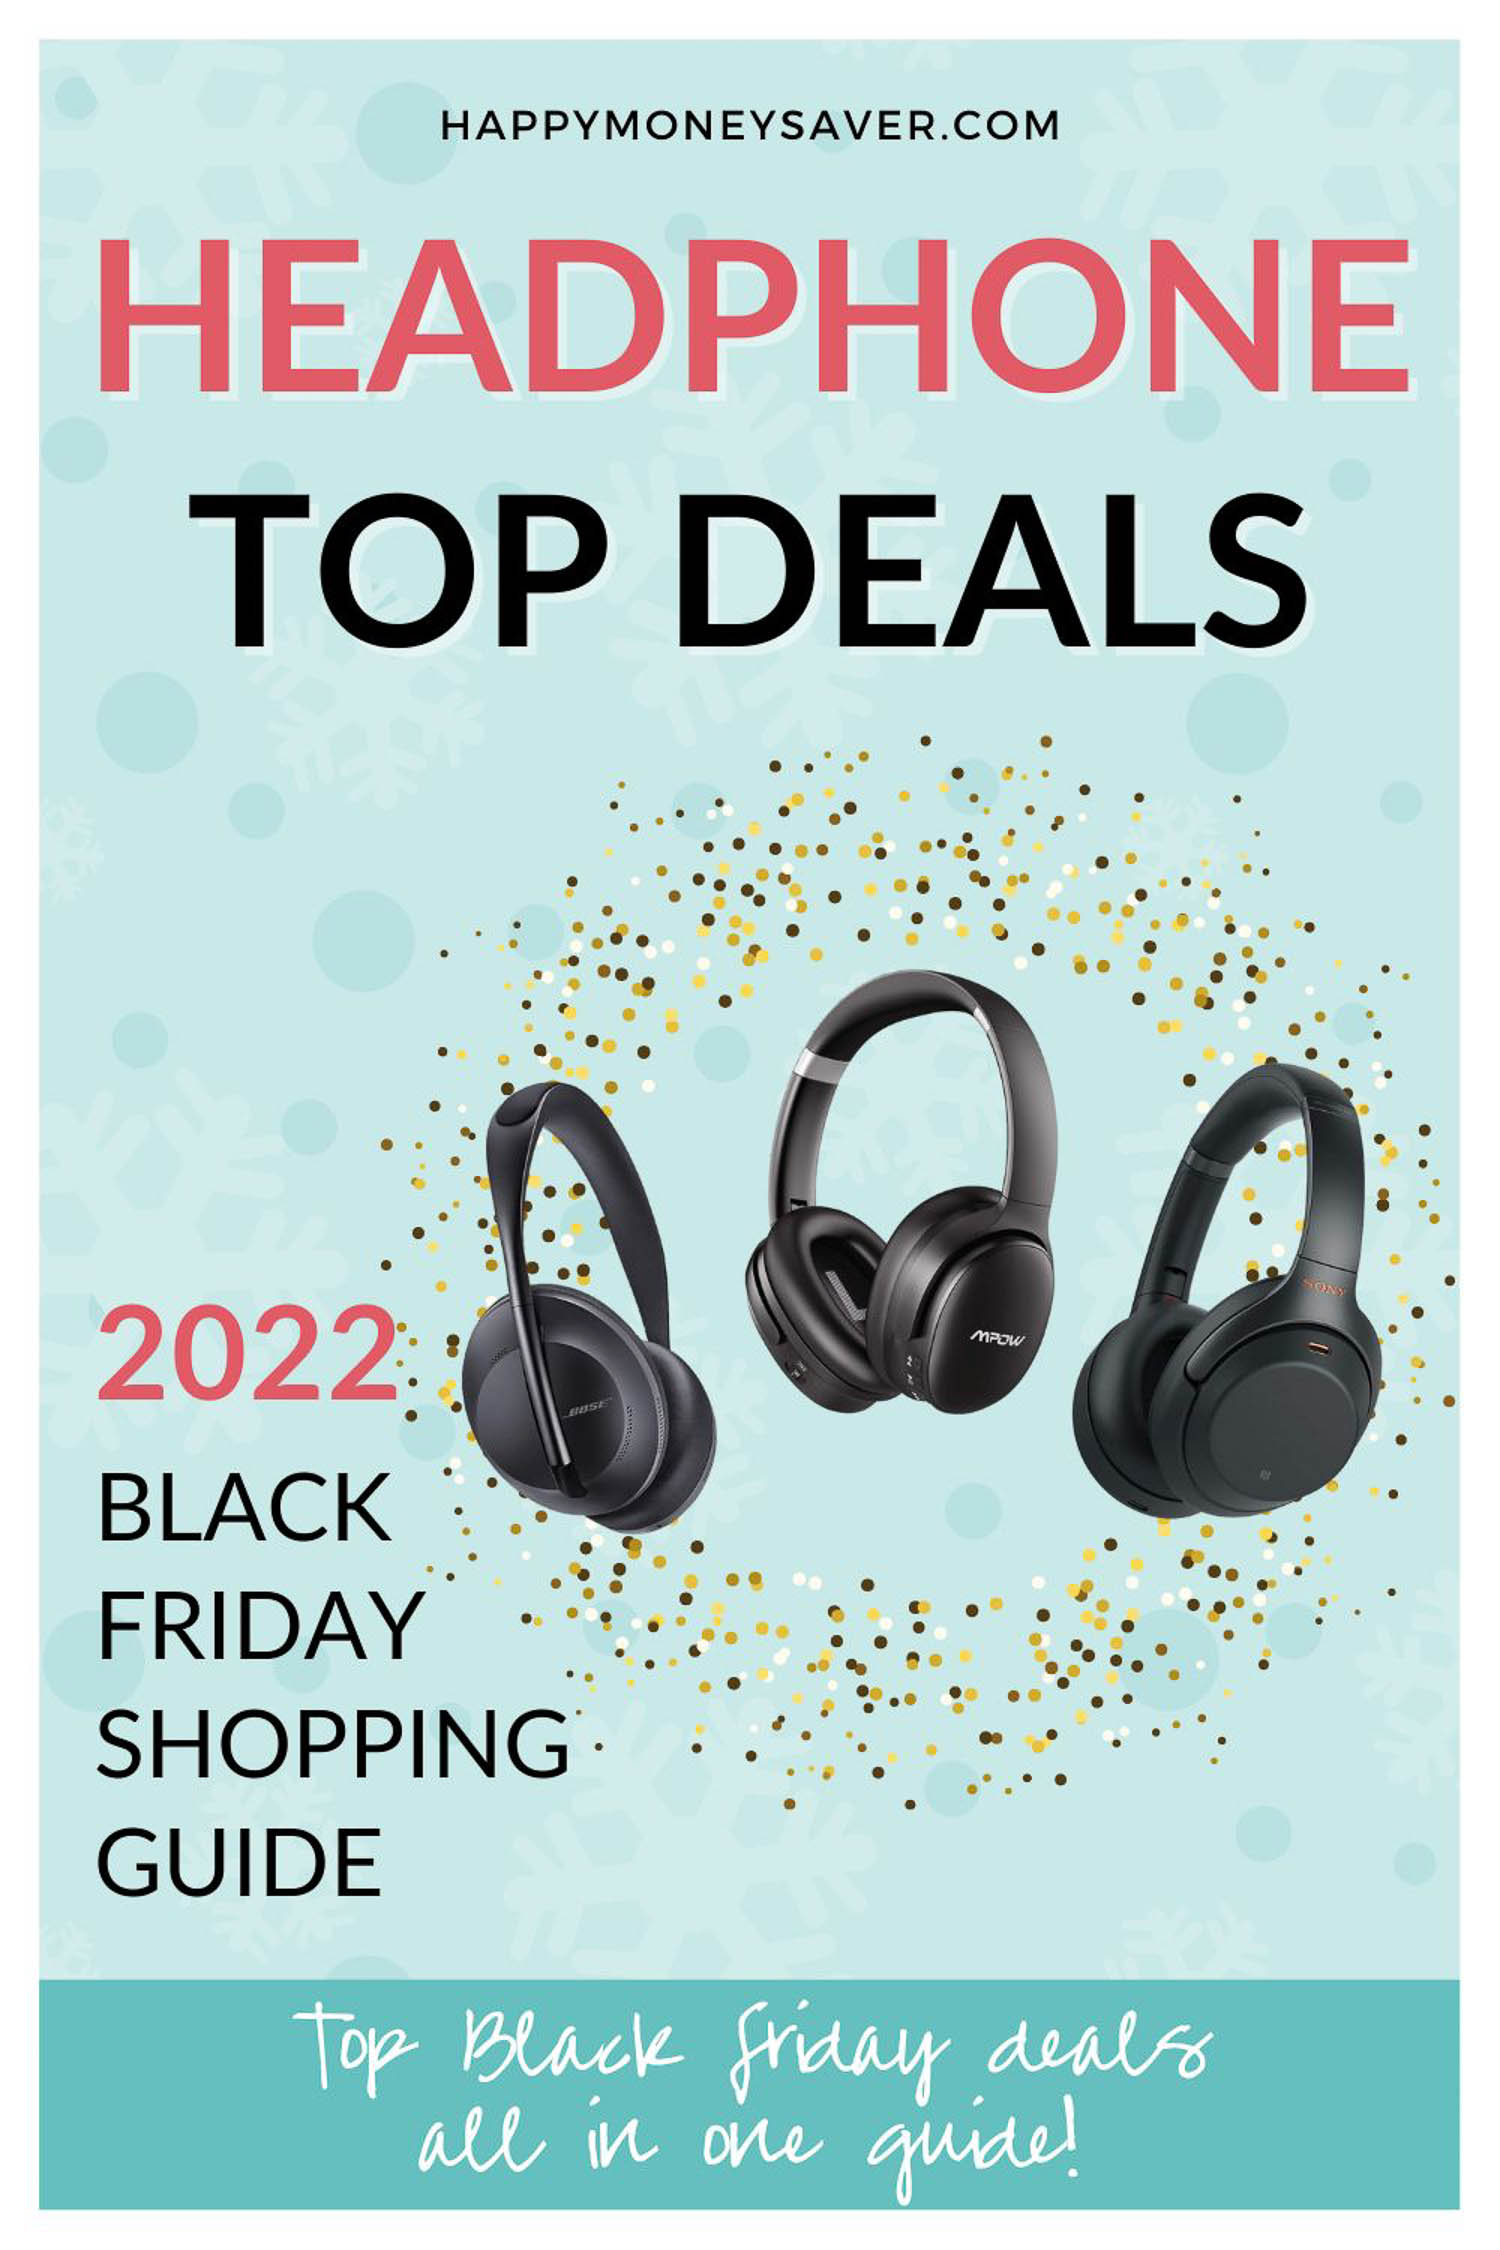 Top Black HEADPHONE Deals for 2022-HappyMoneySaver